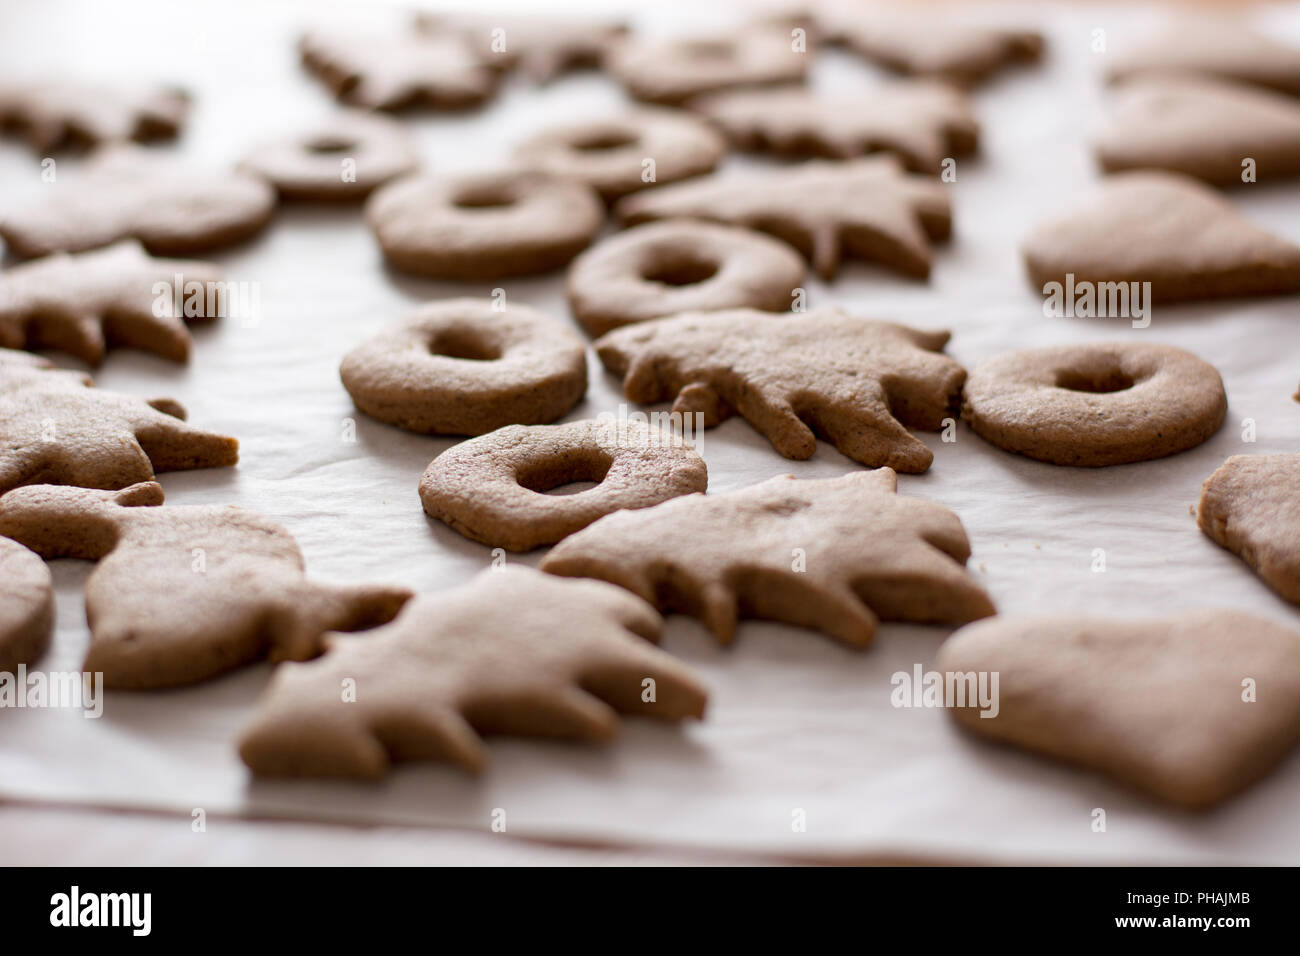 Pasqua al forno gingerbread cookie sulla piastra. Foto Stock